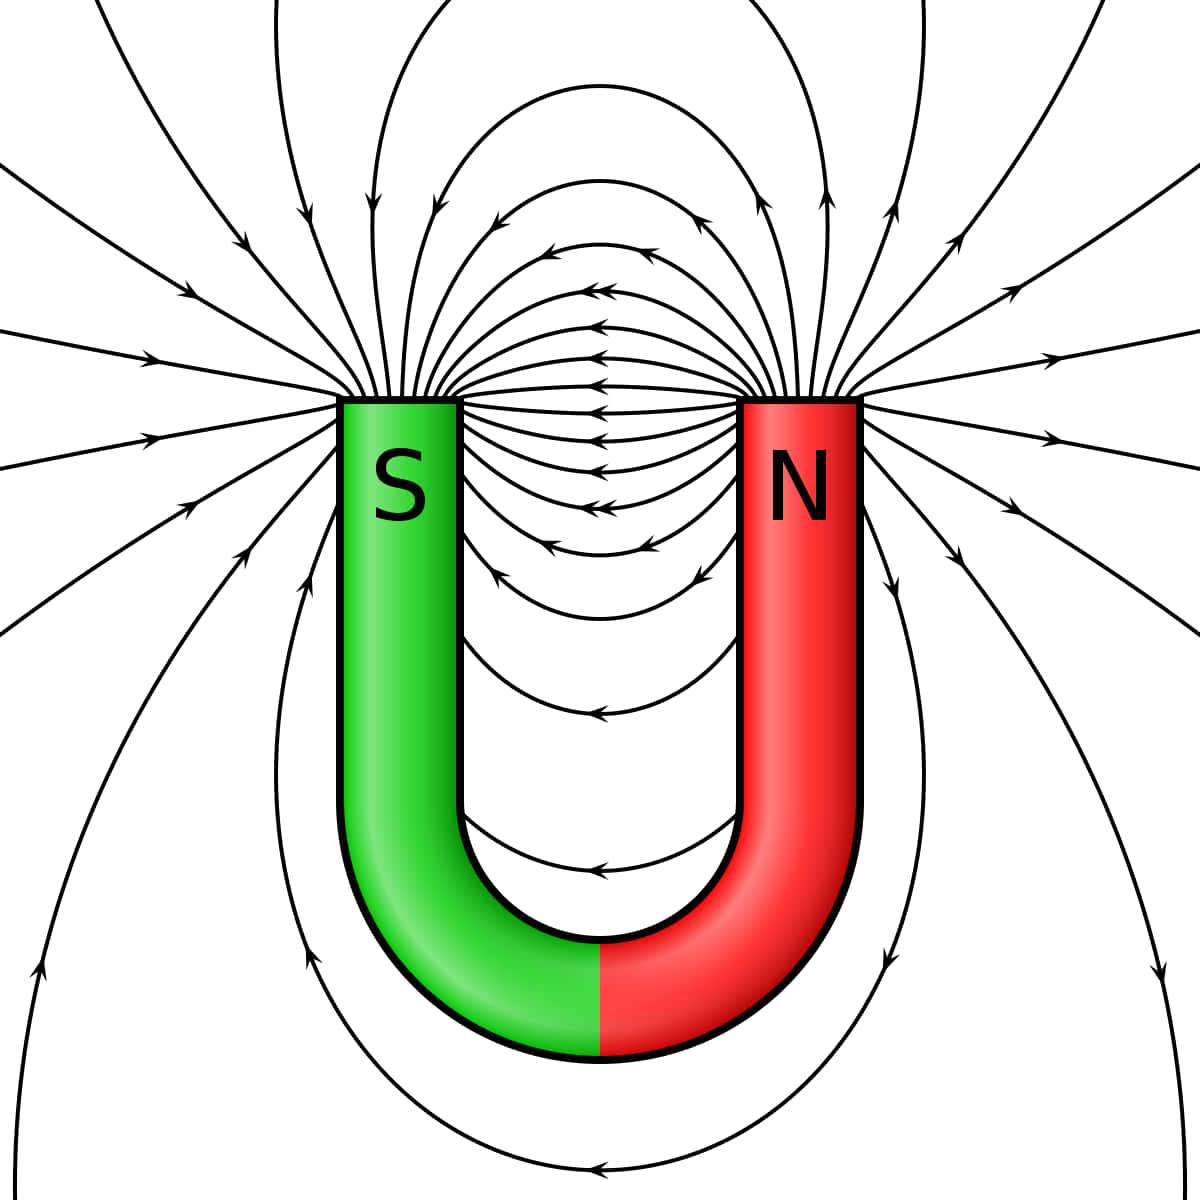 Campimagnetici Intorno All'immagine Di Un Magnete